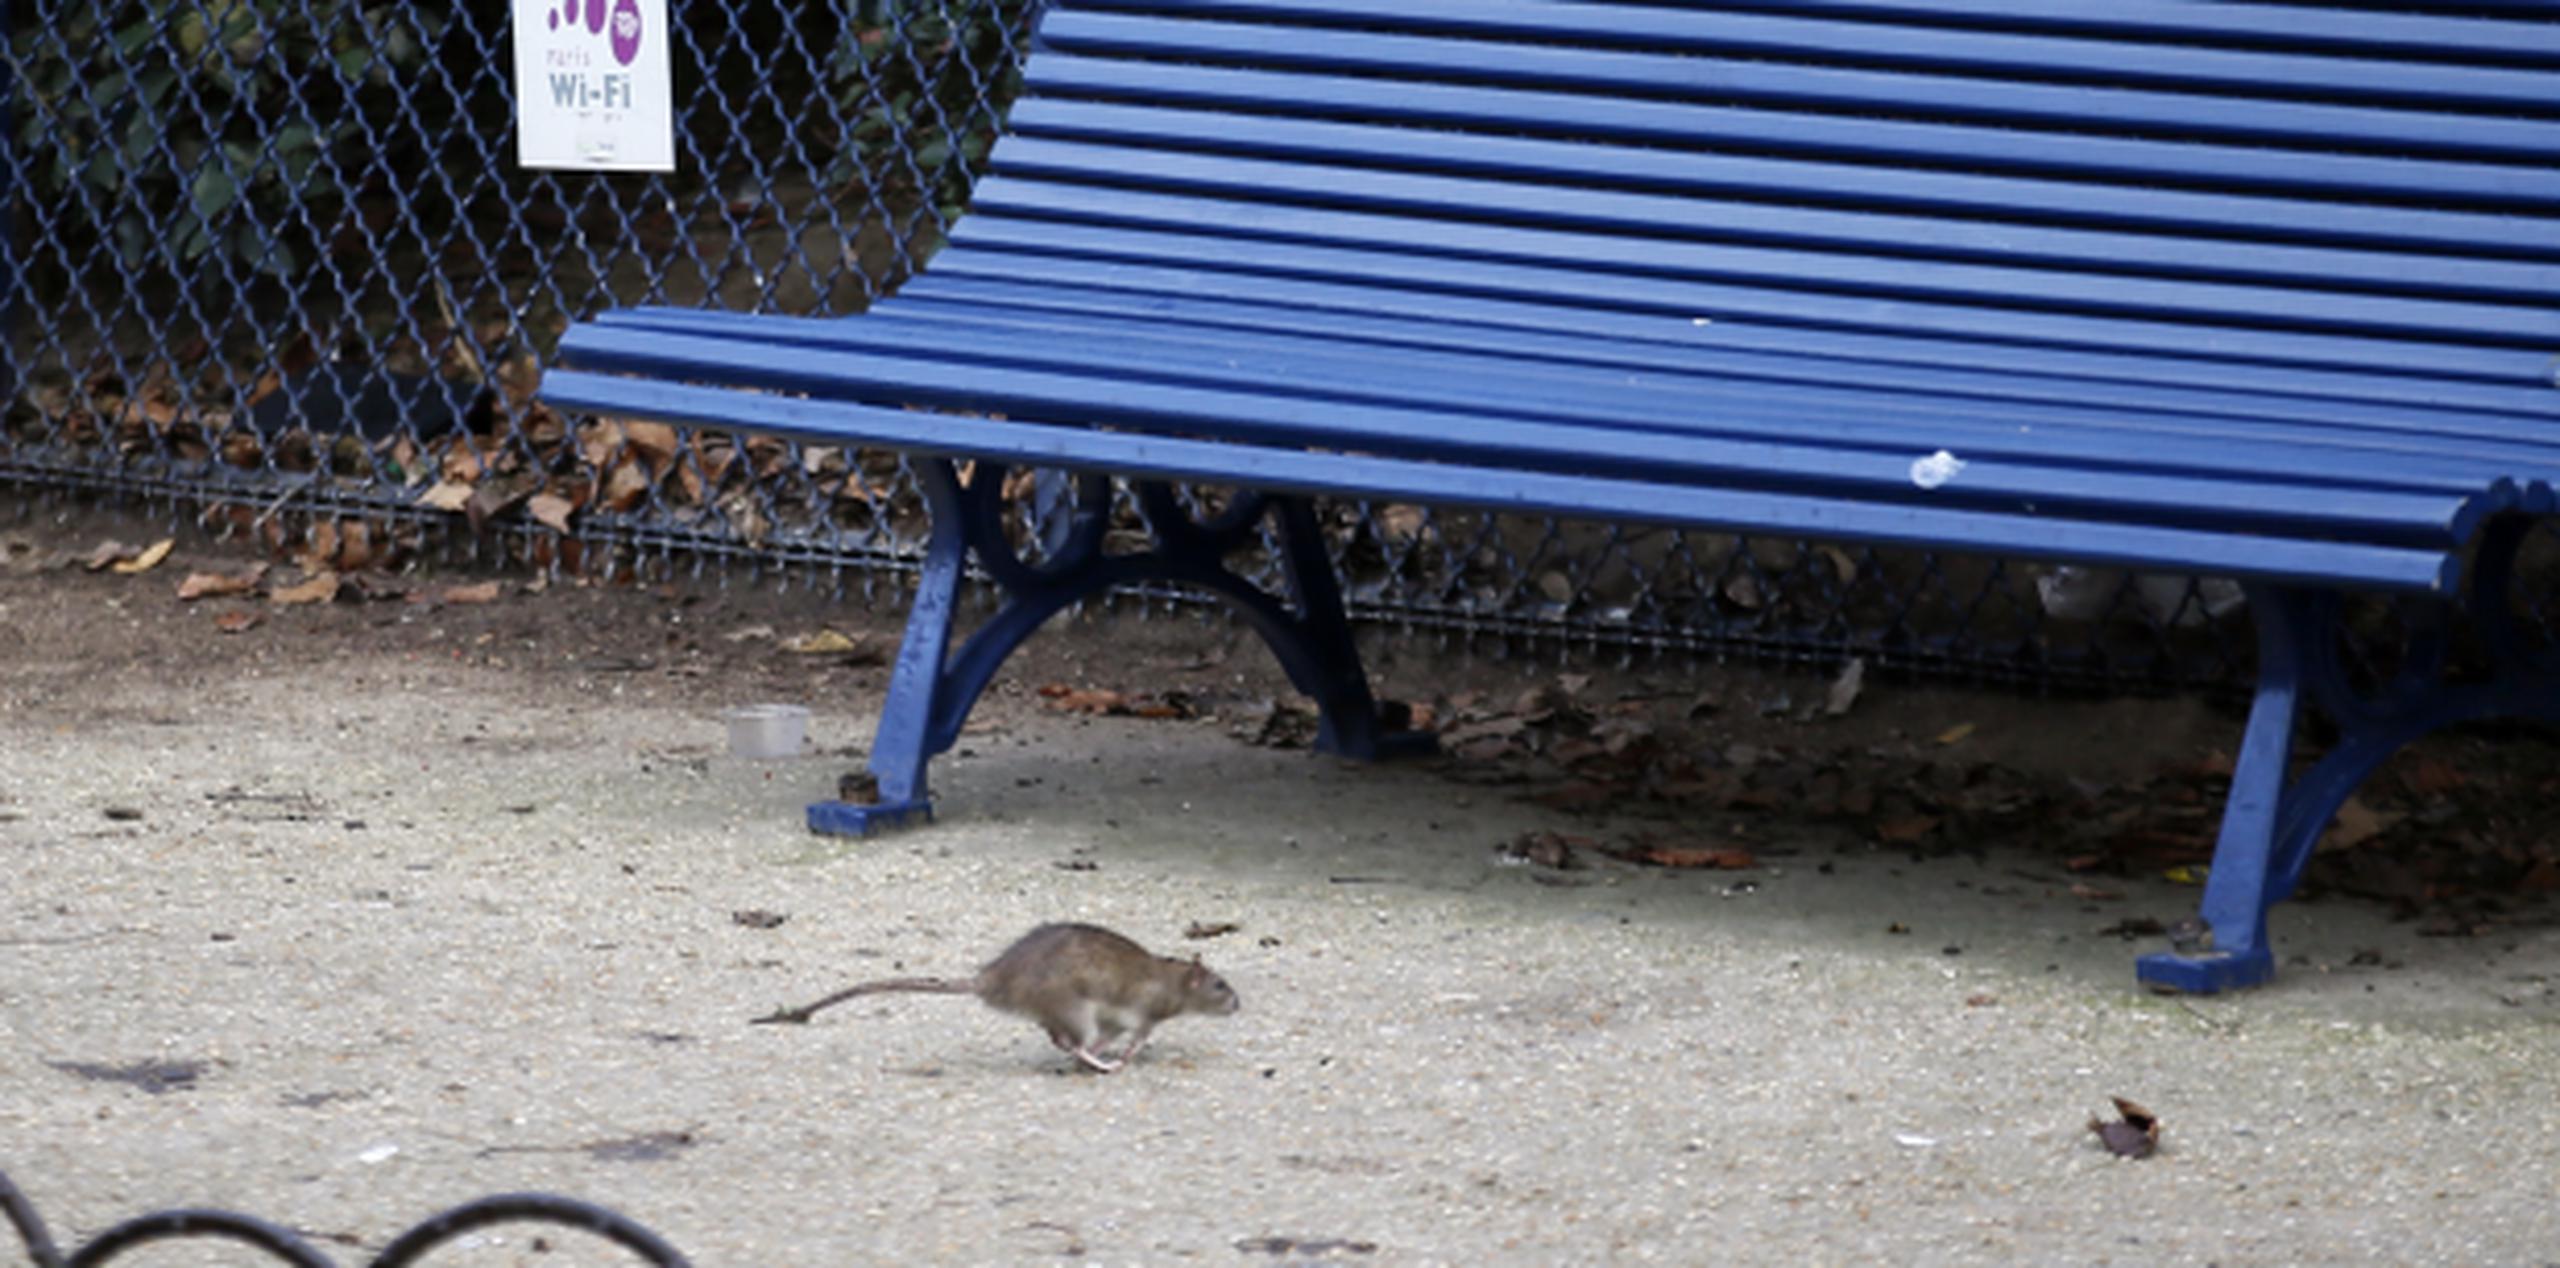 Exterminadores profesionales con décadas de experiencia no pueden recordar infestaciones tan masivas como la que ahora ha obligado a cerrar parques en París, donde montones de ratas descaradamente se alimentan en plena luz del día, como si el lugar fuese suyo. (Archivo)